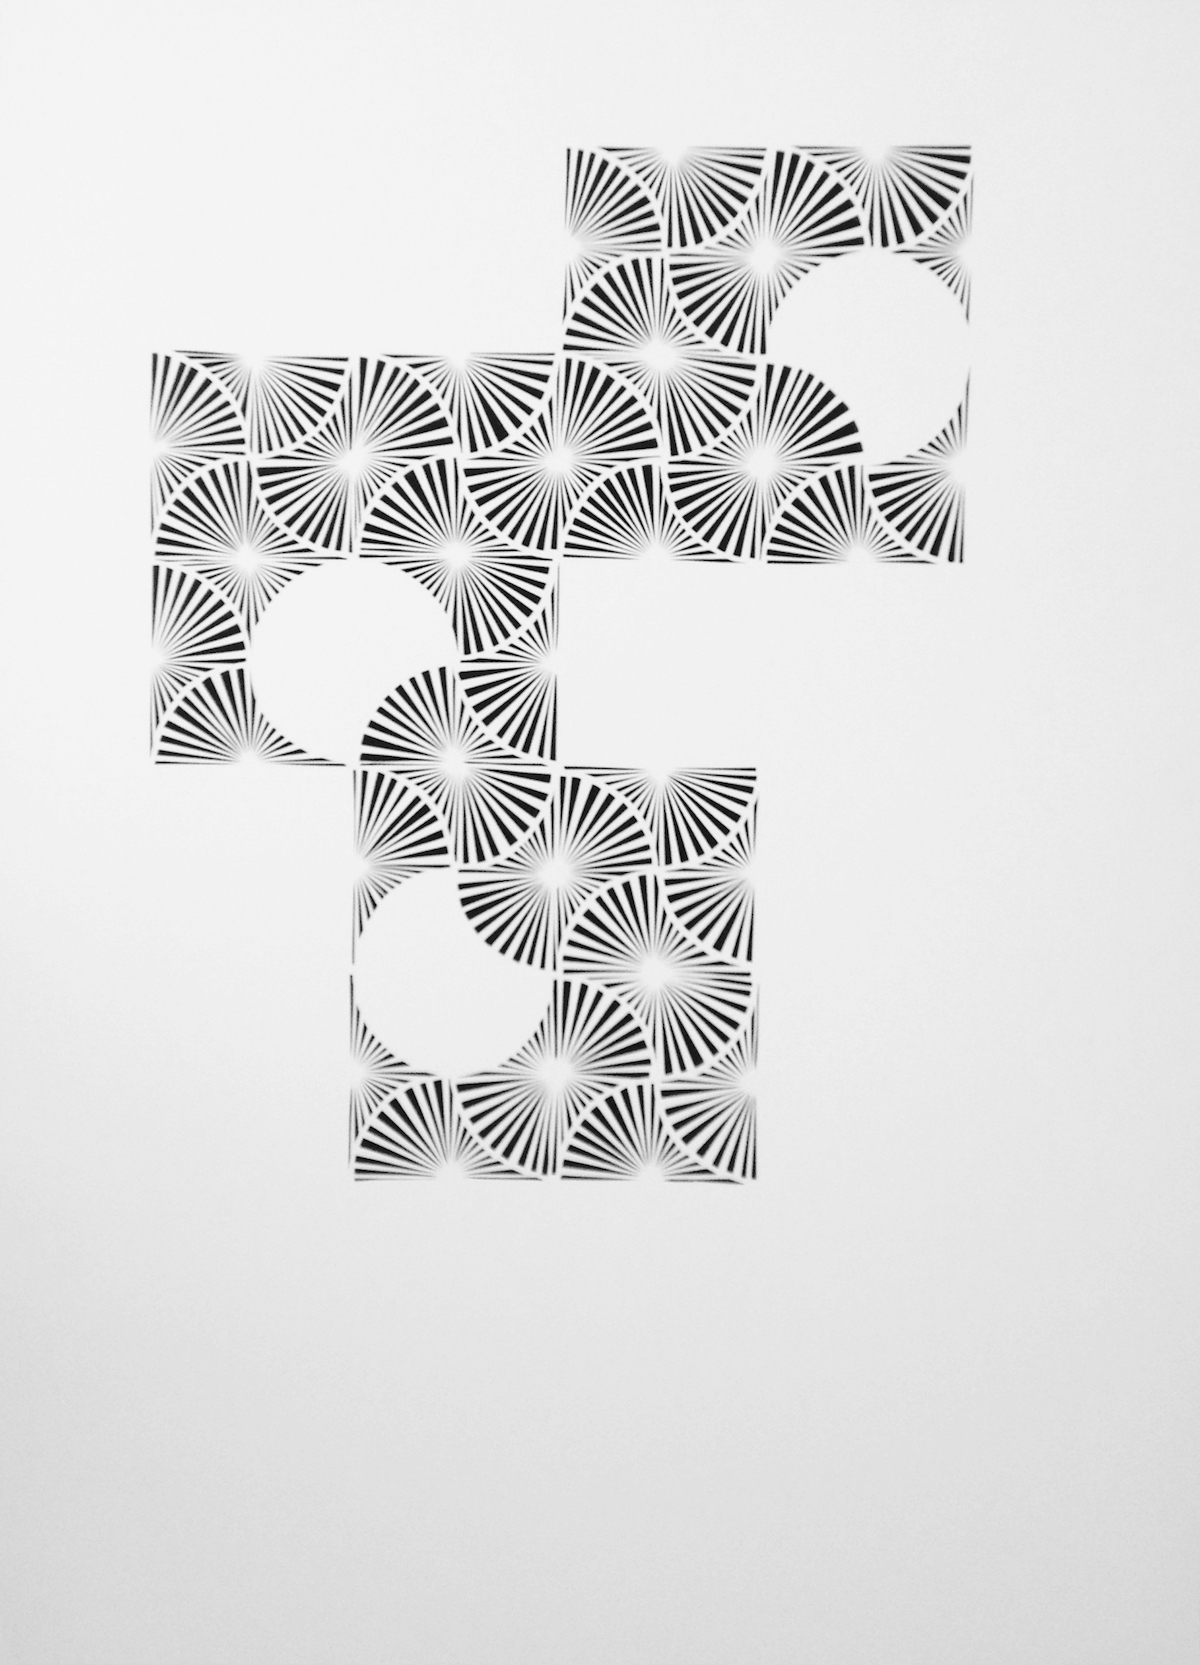  Untitled, cut-paper, 22" x 30" 2016 